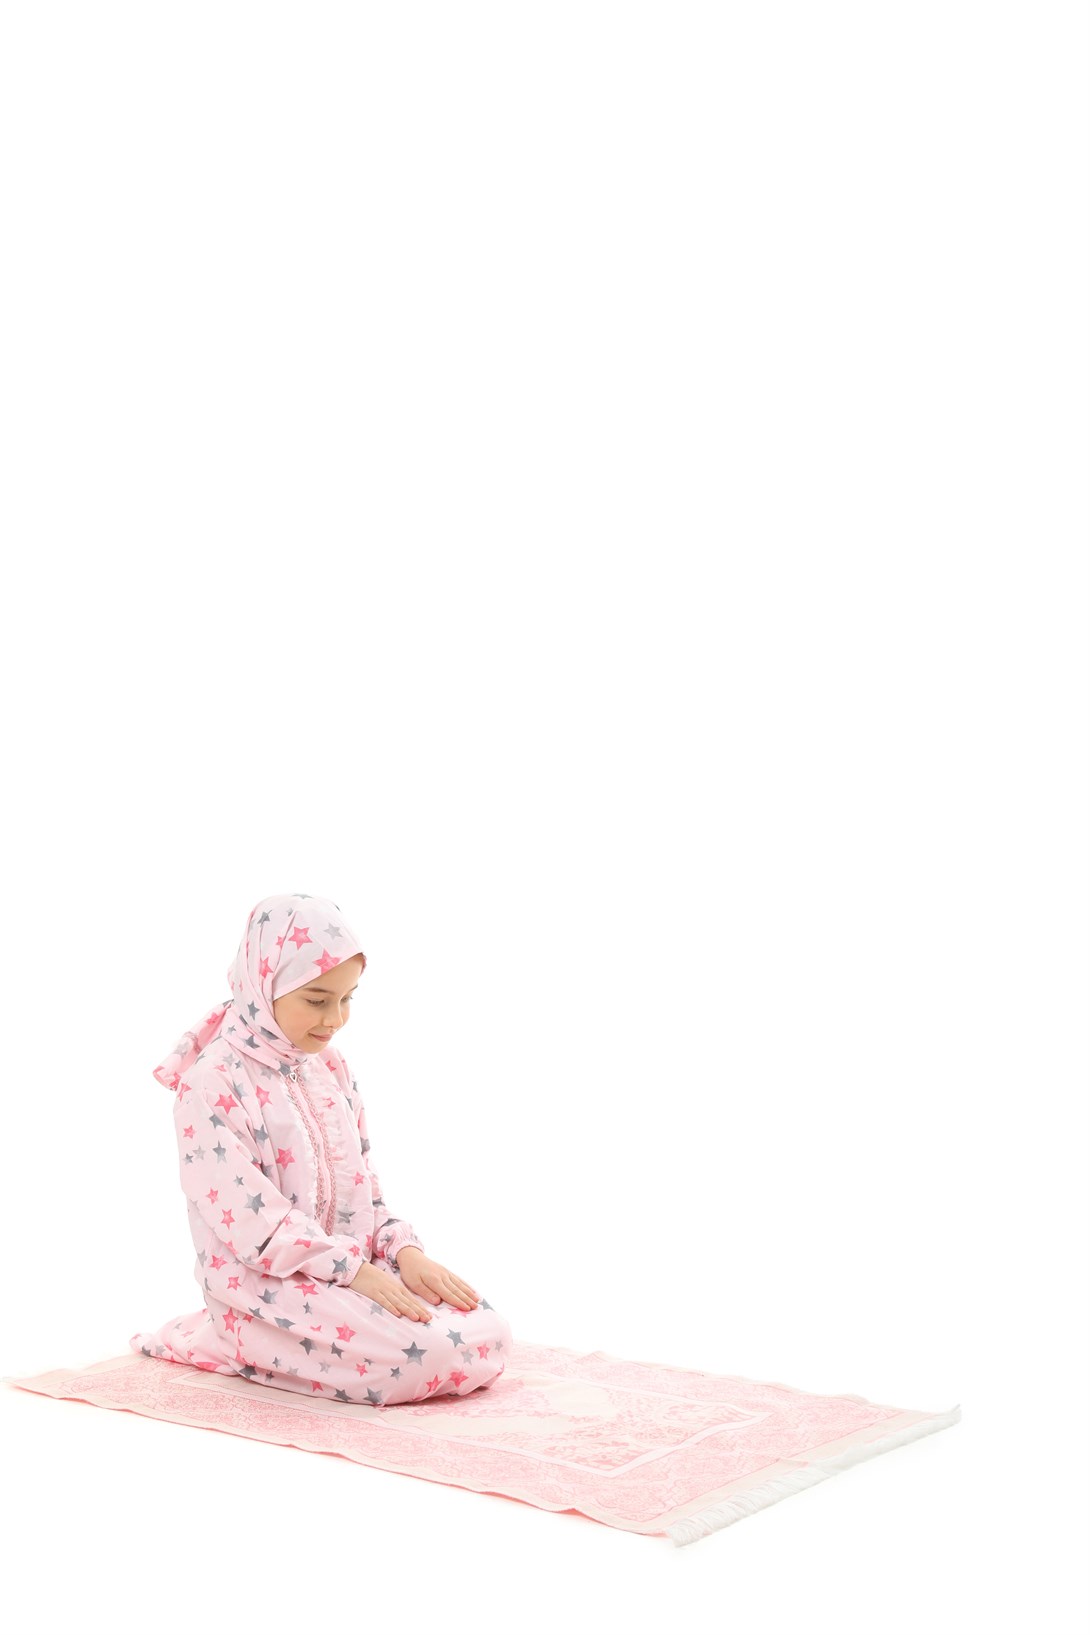 Practical Zippered Cotton Girls' Prayer Dress 3-Piece Set Pink Printed